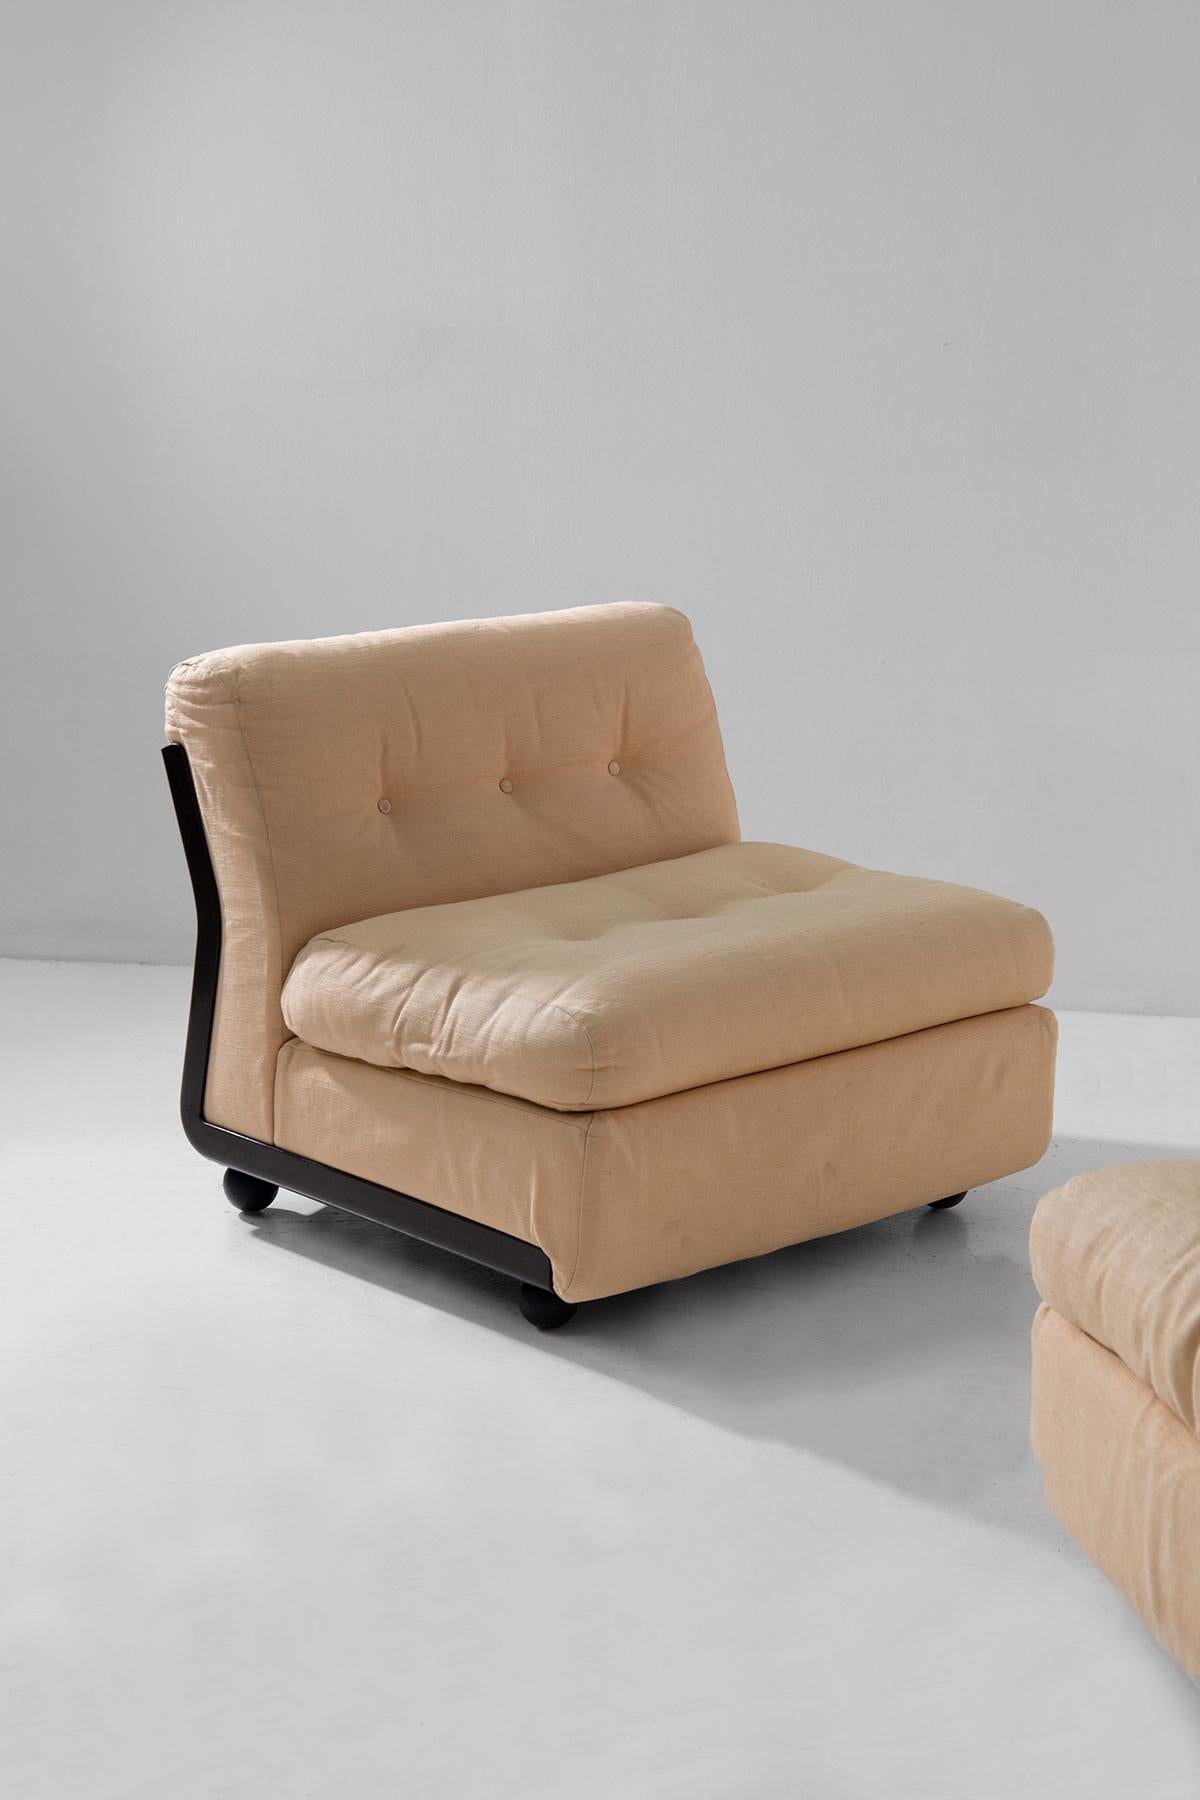 Mid-Century Modern Pair of Amanta Mario Bellini armchairs, original fabric, label